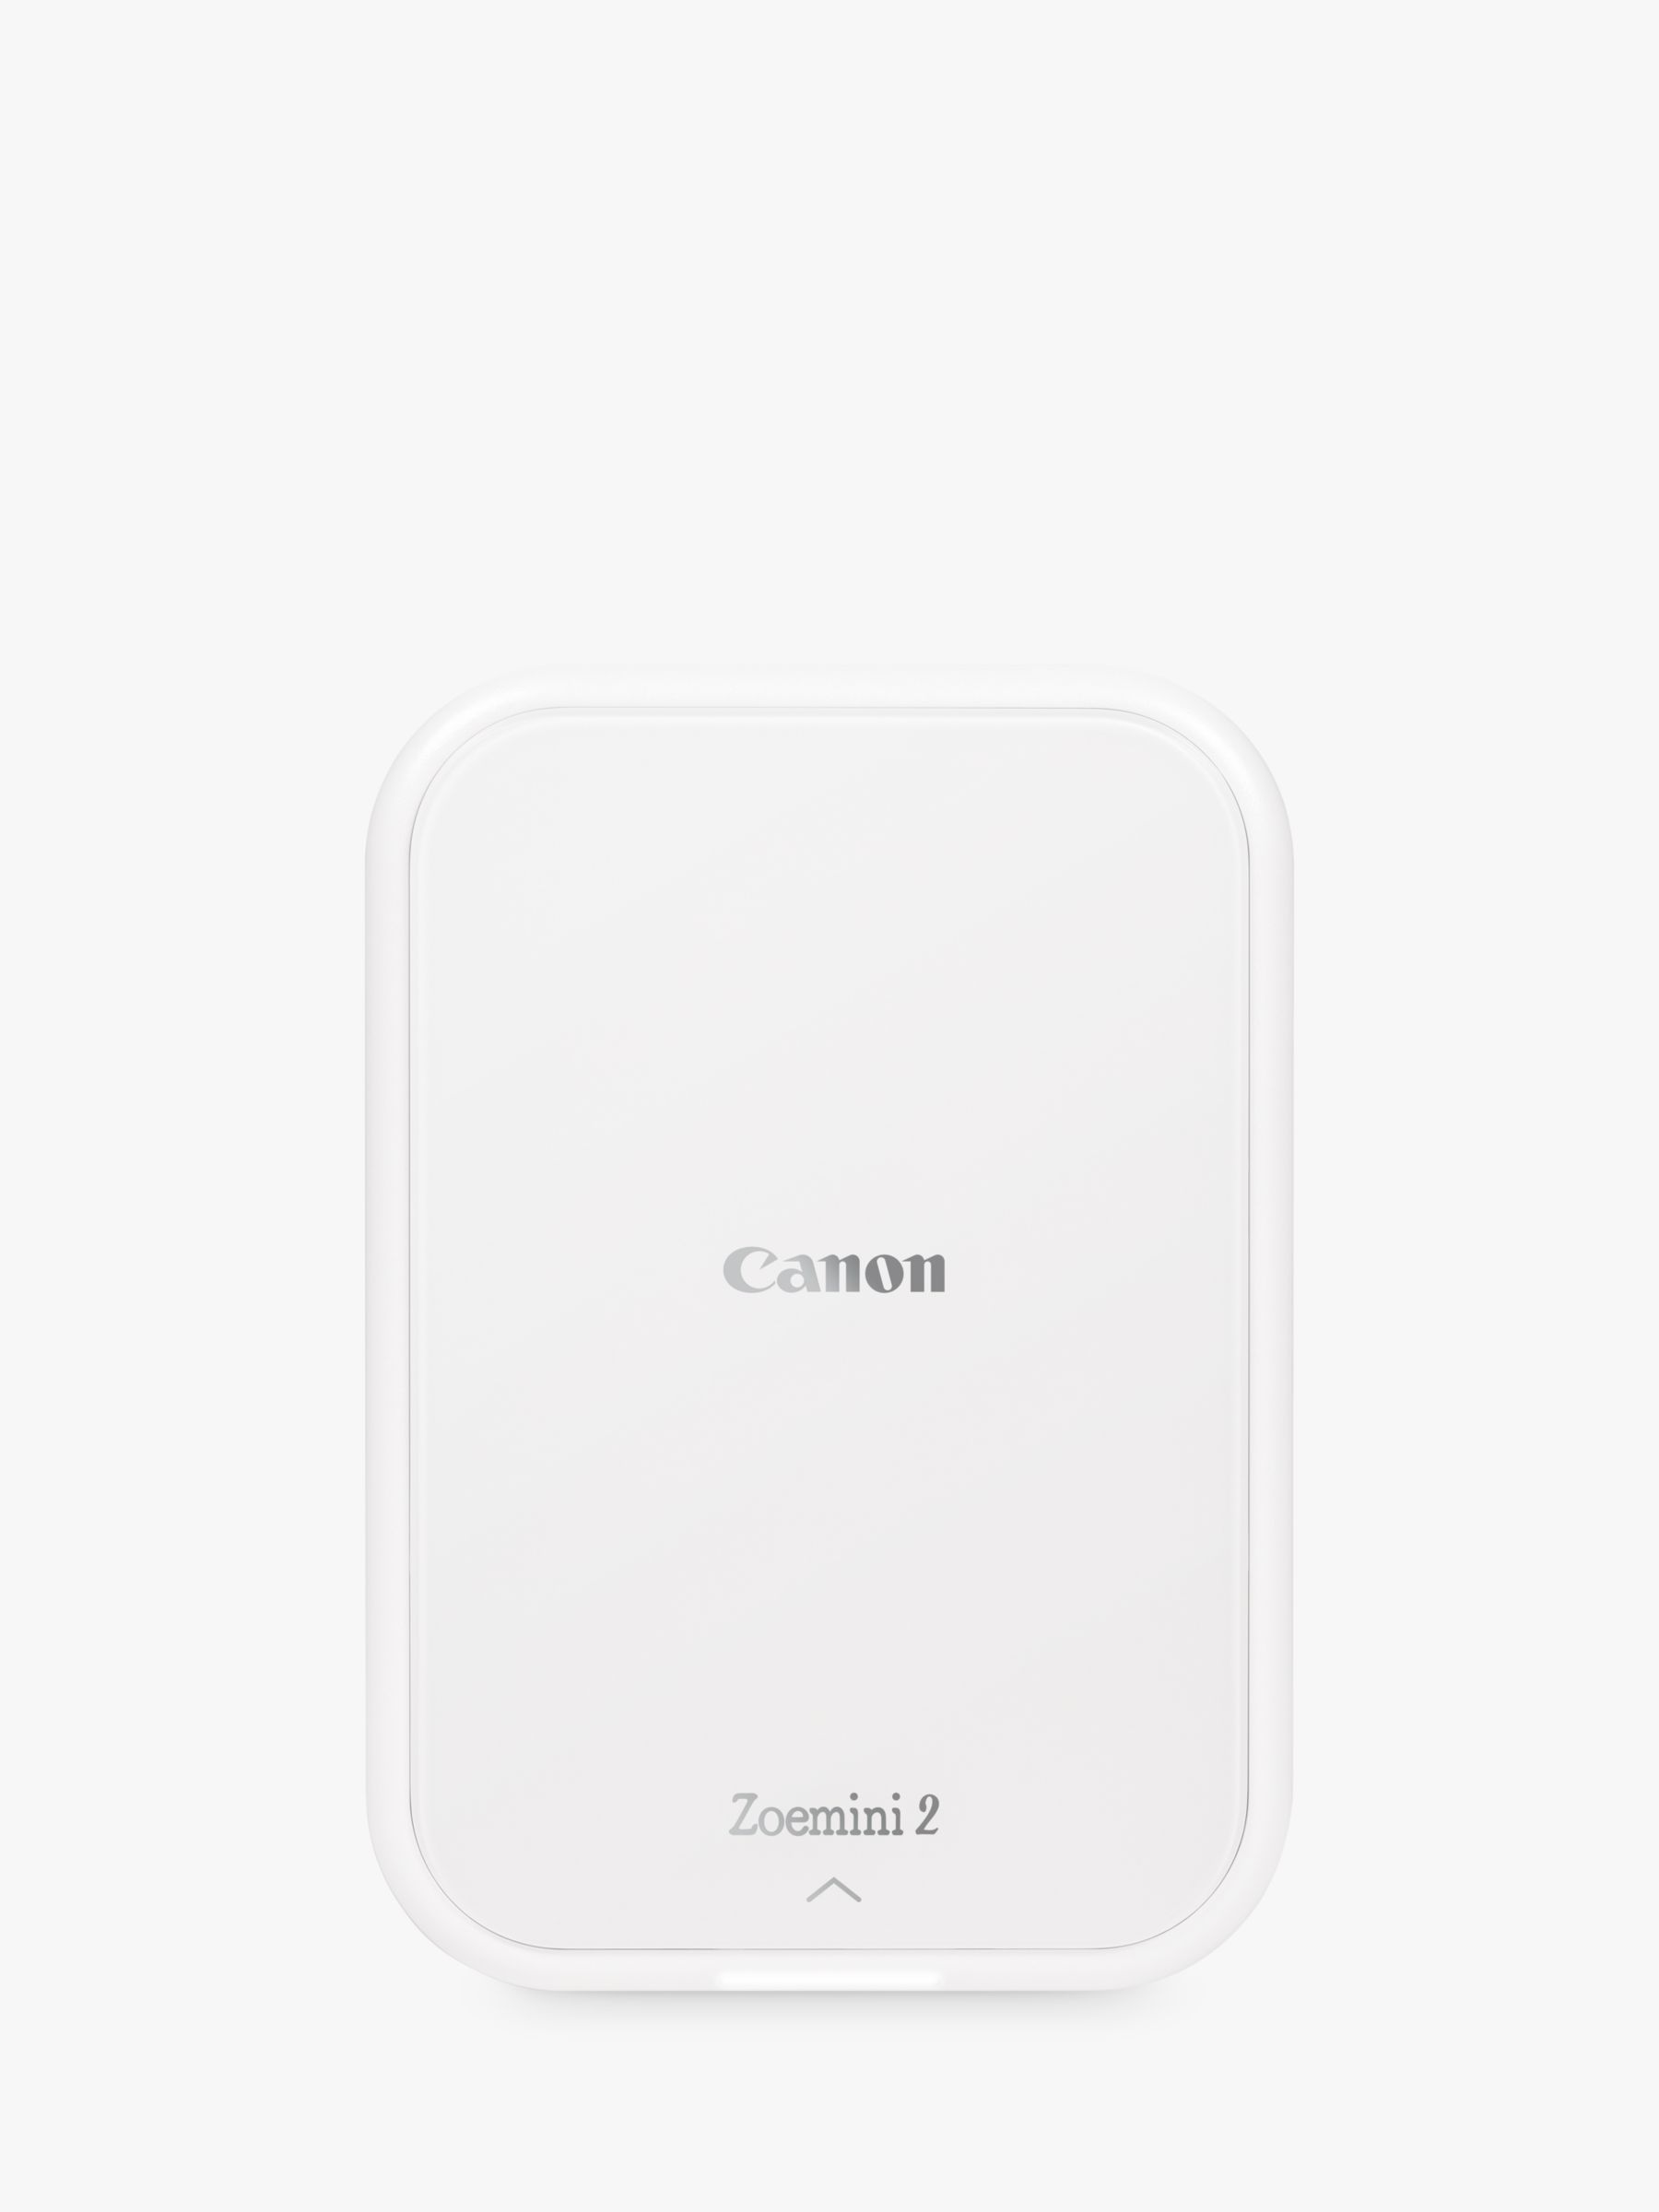 Canon Zoemini 2 Mobile Photo Printer, White